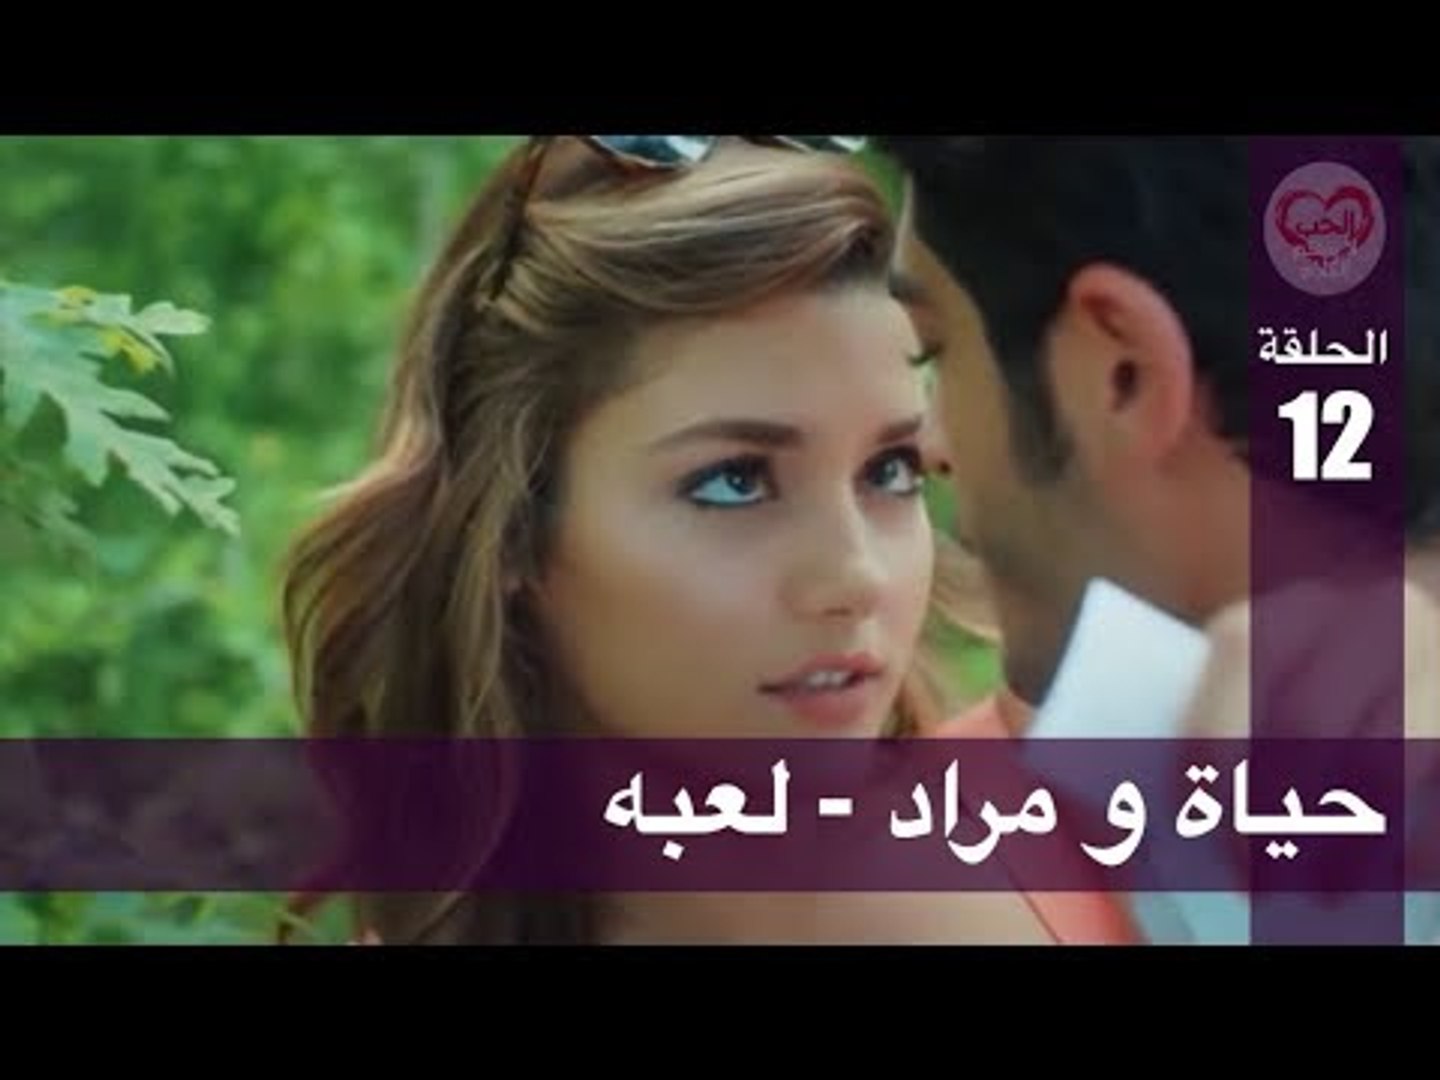 الحب لا يفهم الكلام الحلقة 12 حياة و مراد لعبه فيديو Dailymotion